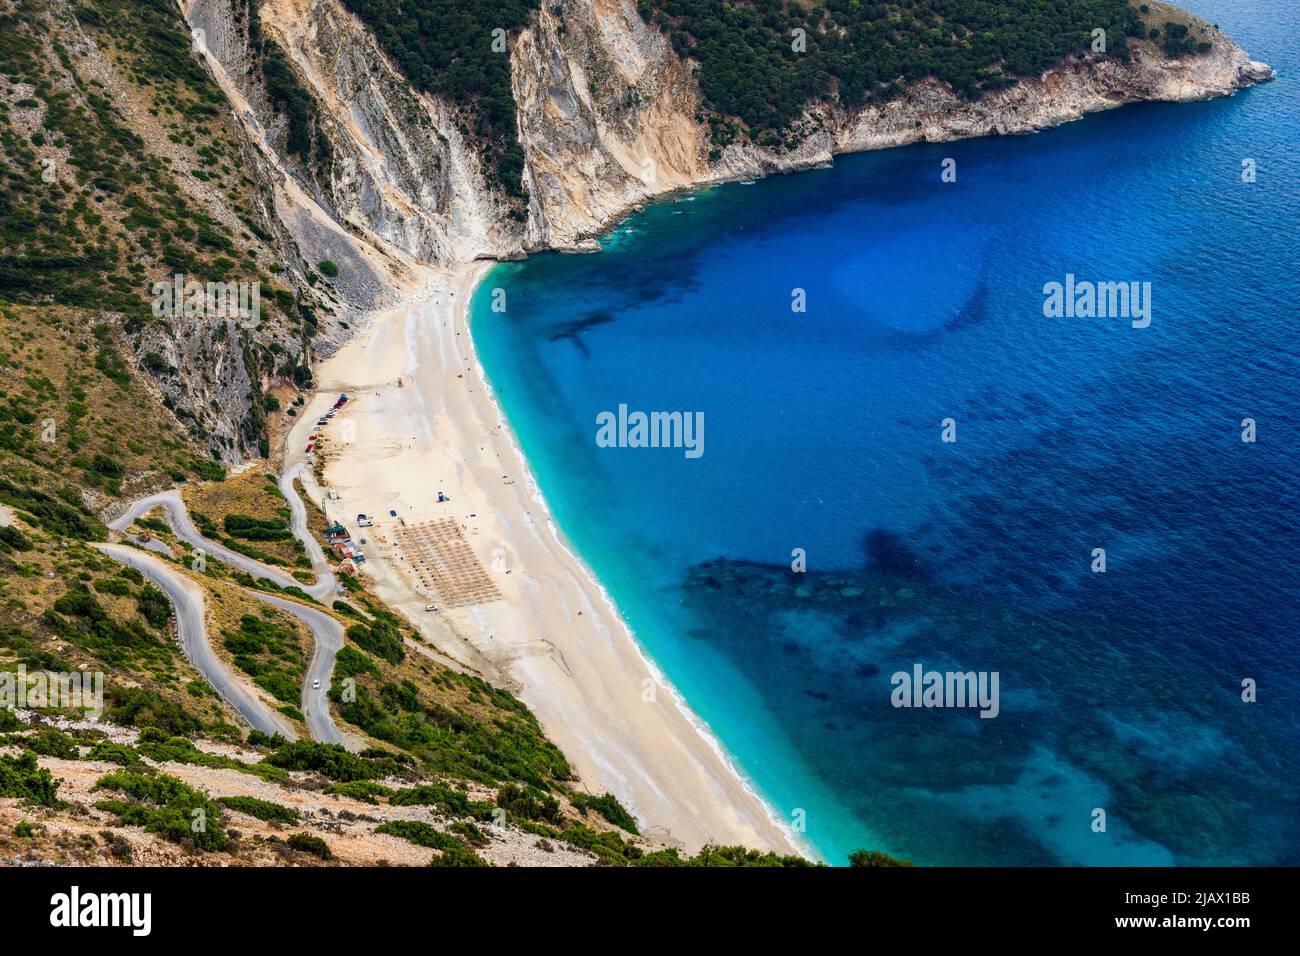 Vista aérea de drones de la emblemática bahía de color turquesa y zafiro y la playa de Myrtos, isla de Cefalonia (Cephalonia), Jónico, Grecia. Playa de Myrtos, Kefalonia isl Foto de stock